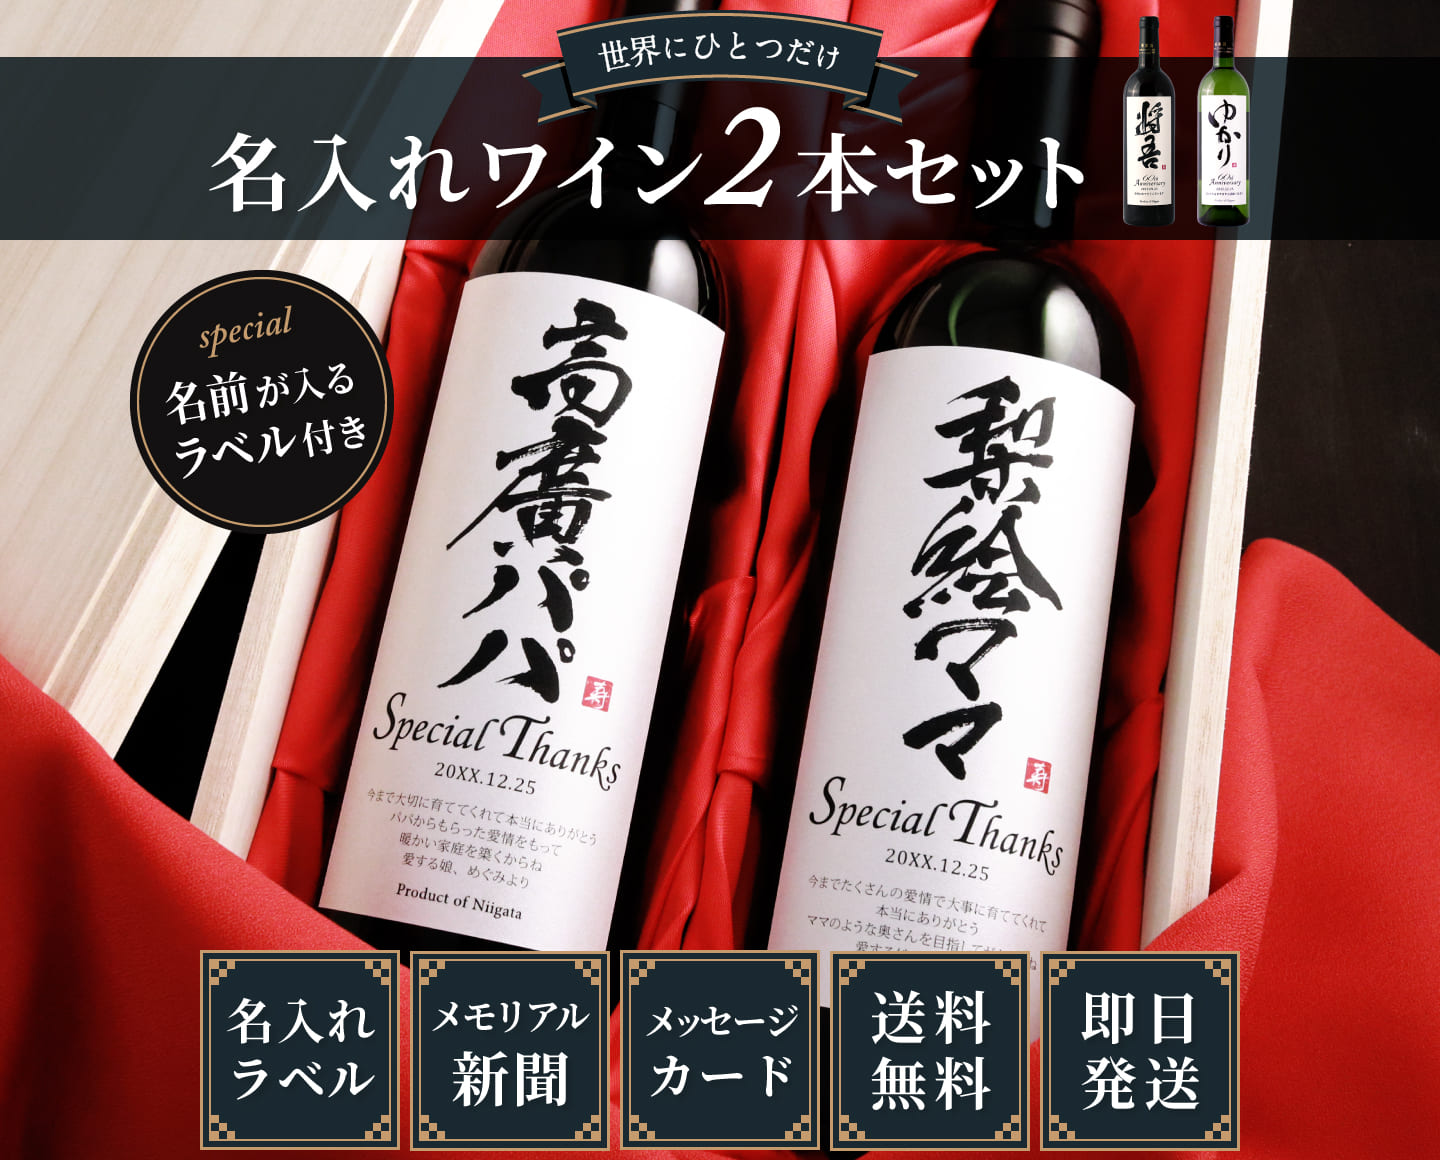 米寿に贈る名入れ漢字ワイン 88年前の誕生日の新聞と桐箱が付いた豪華セット